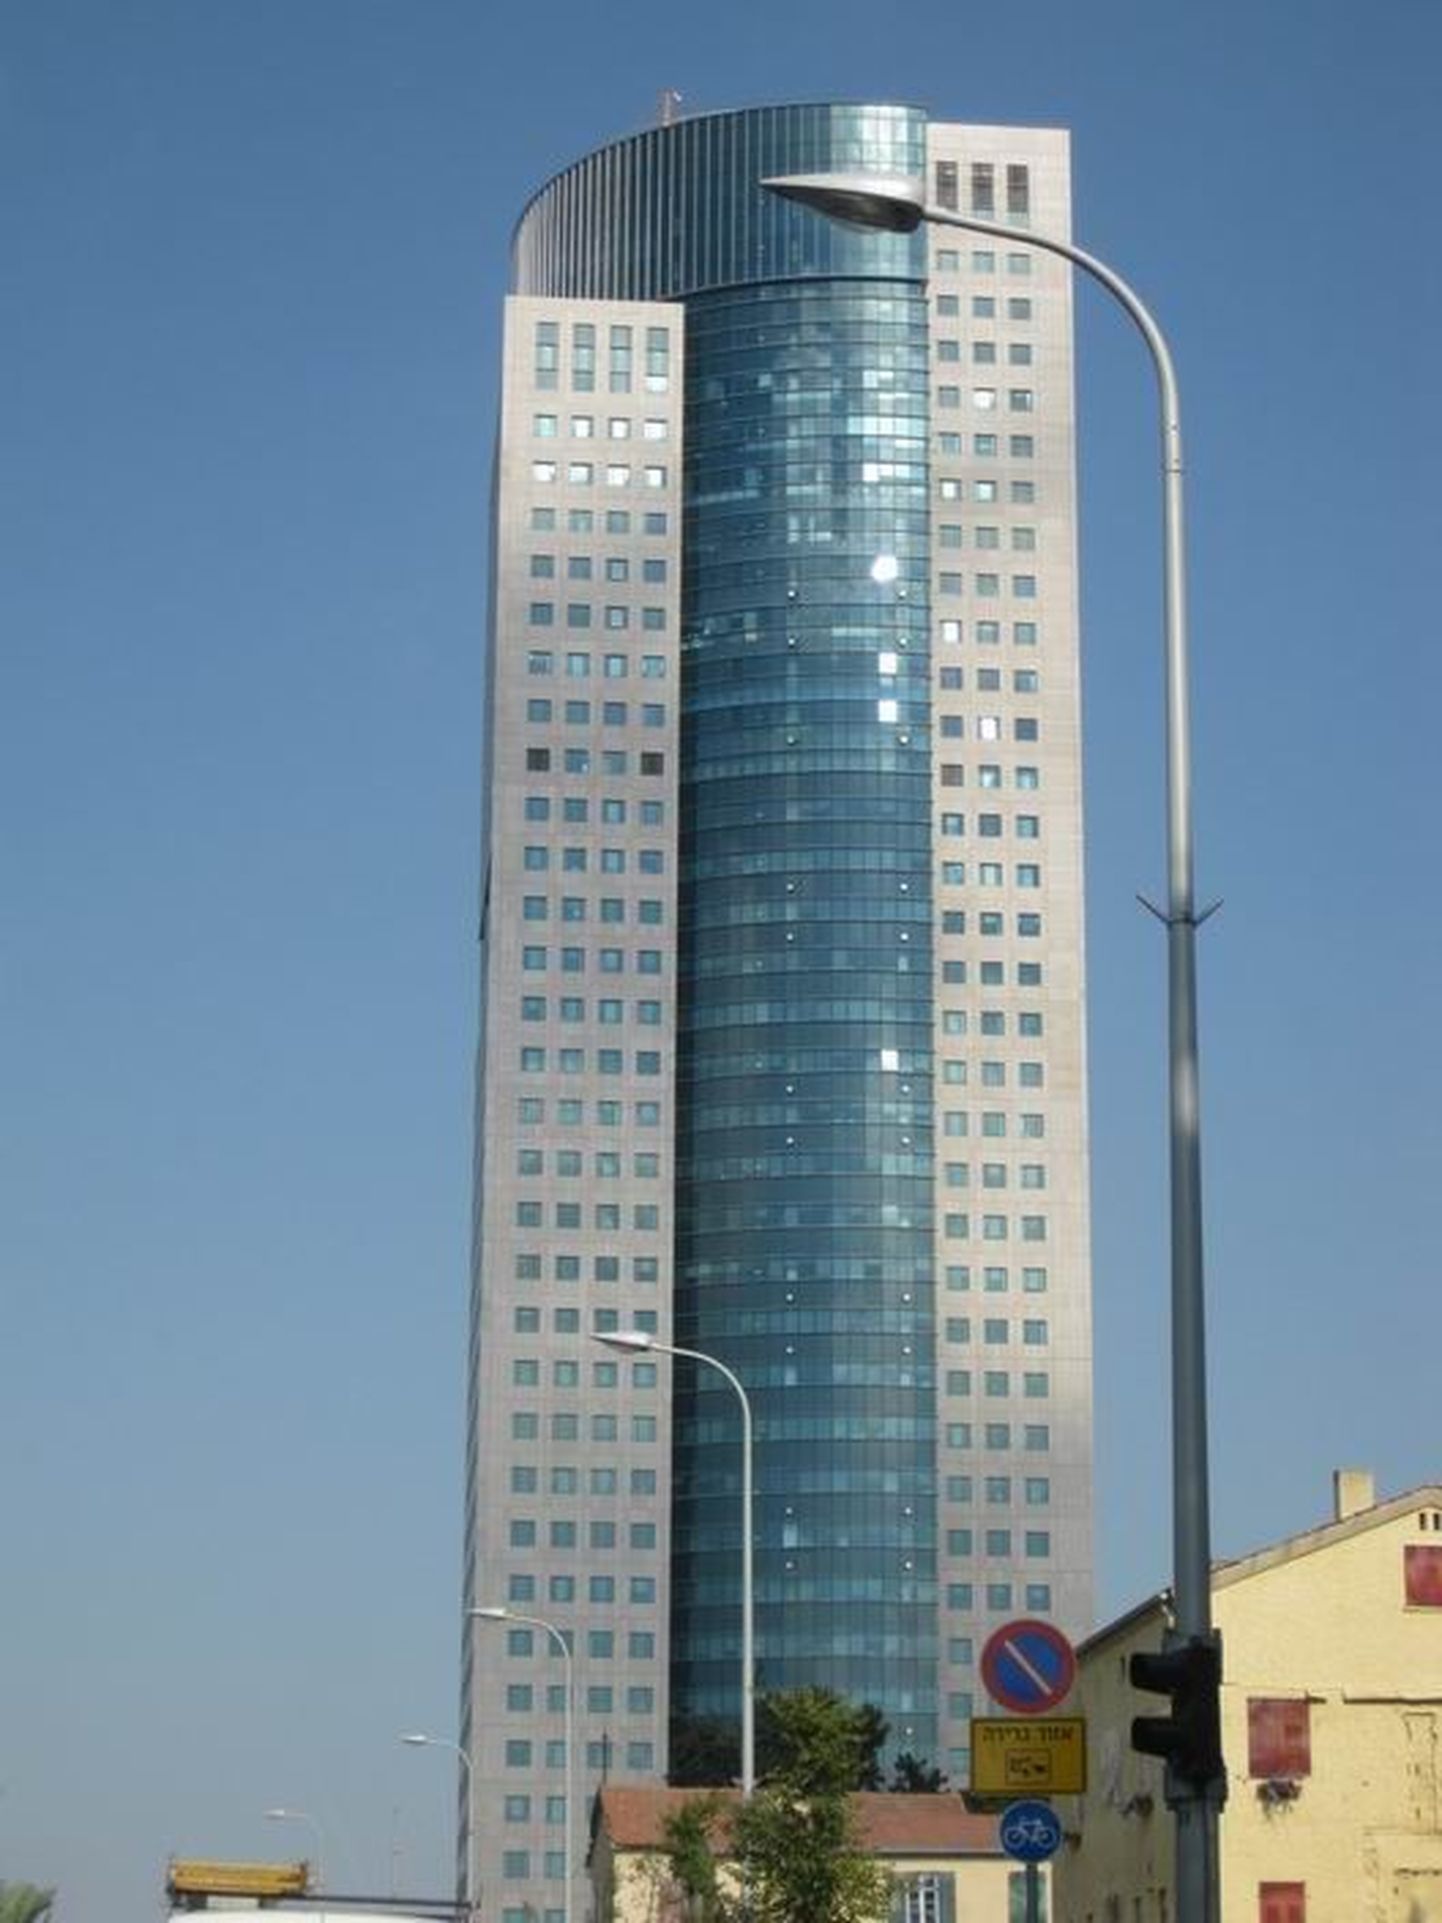 Hoone Tel Avivis, mille 24. korrusel hakkab paiknema Eesti saatkond.